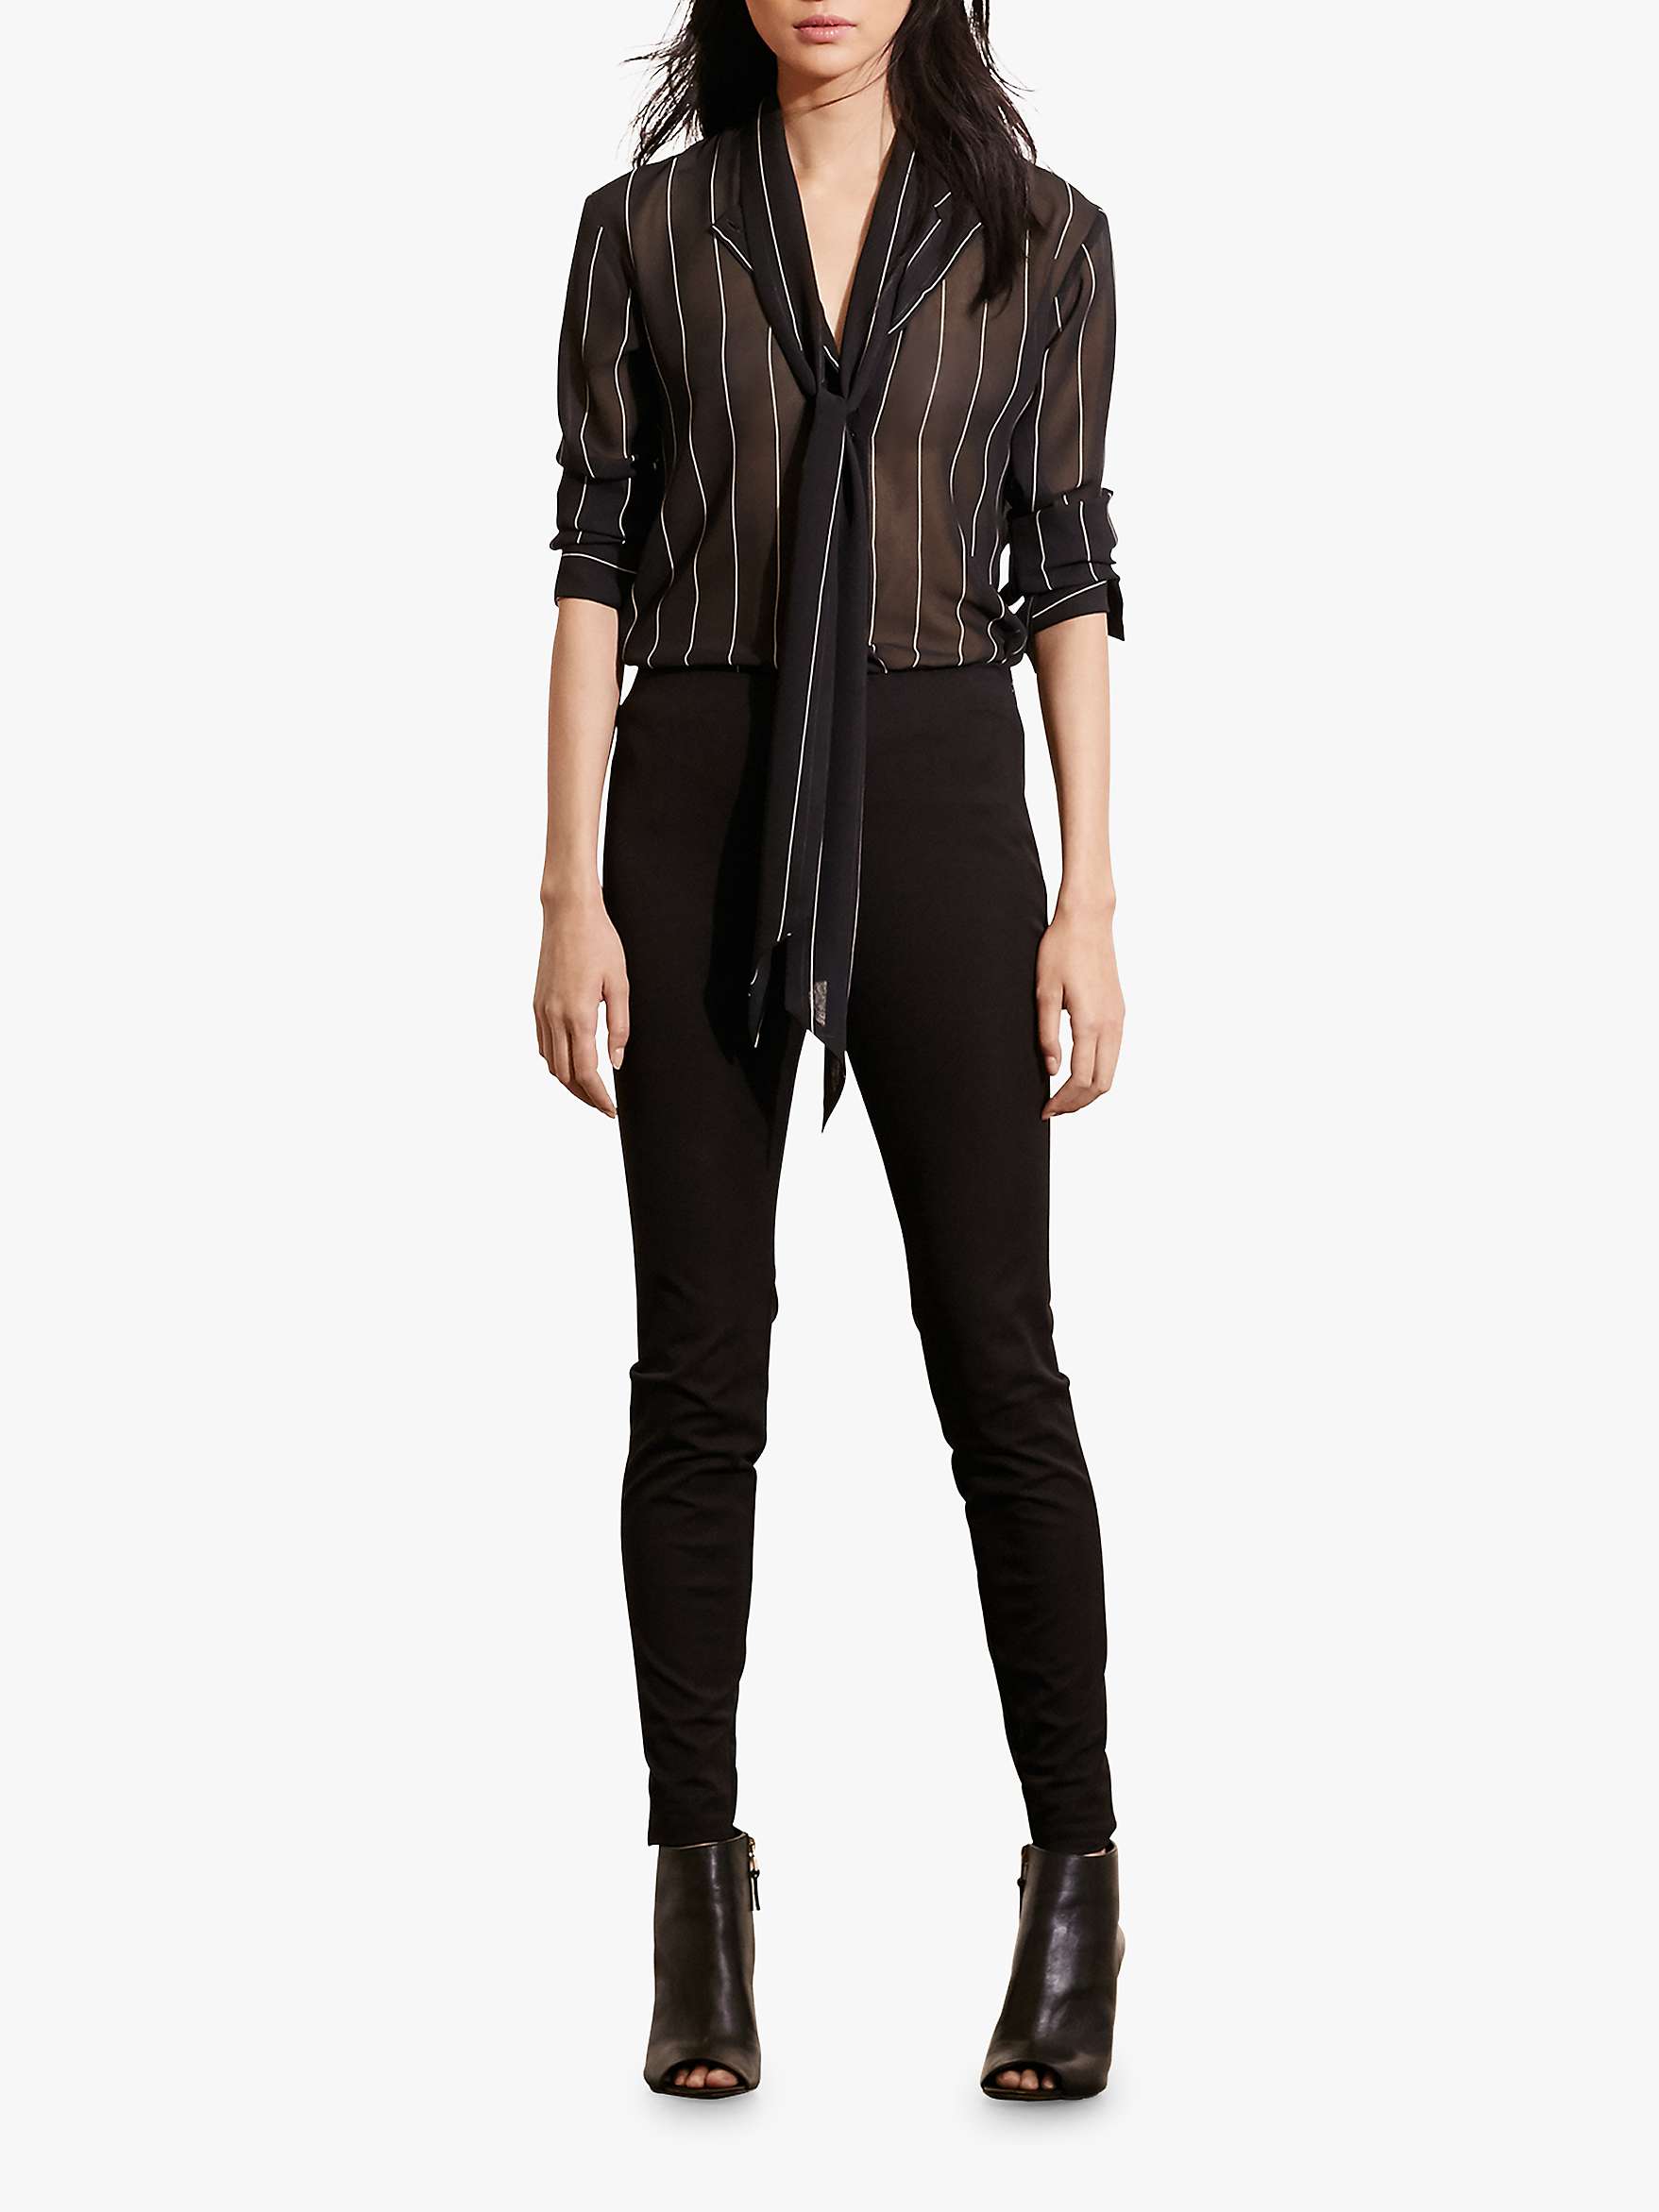 Buy Lauren Ralph Lauren Twill Skinny Trousers, Black Online at johnlewis.com